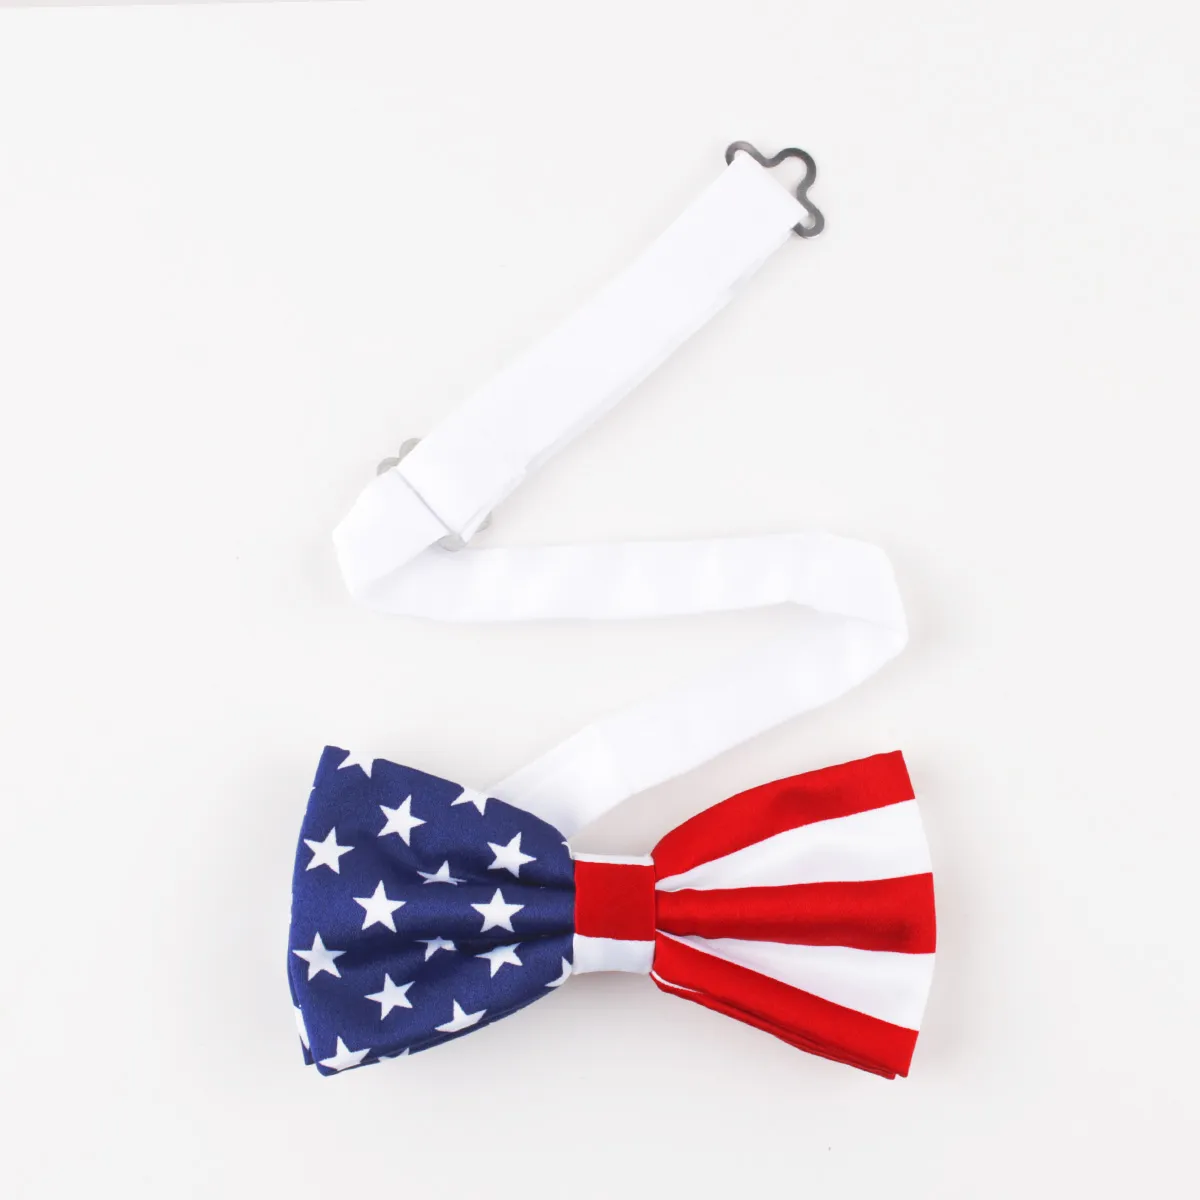 Галстук или галстук-бабочка в честь праздника четвертого июля с американским флагом. Набор галстуков-бабочек или галстуков с флагом США326N.